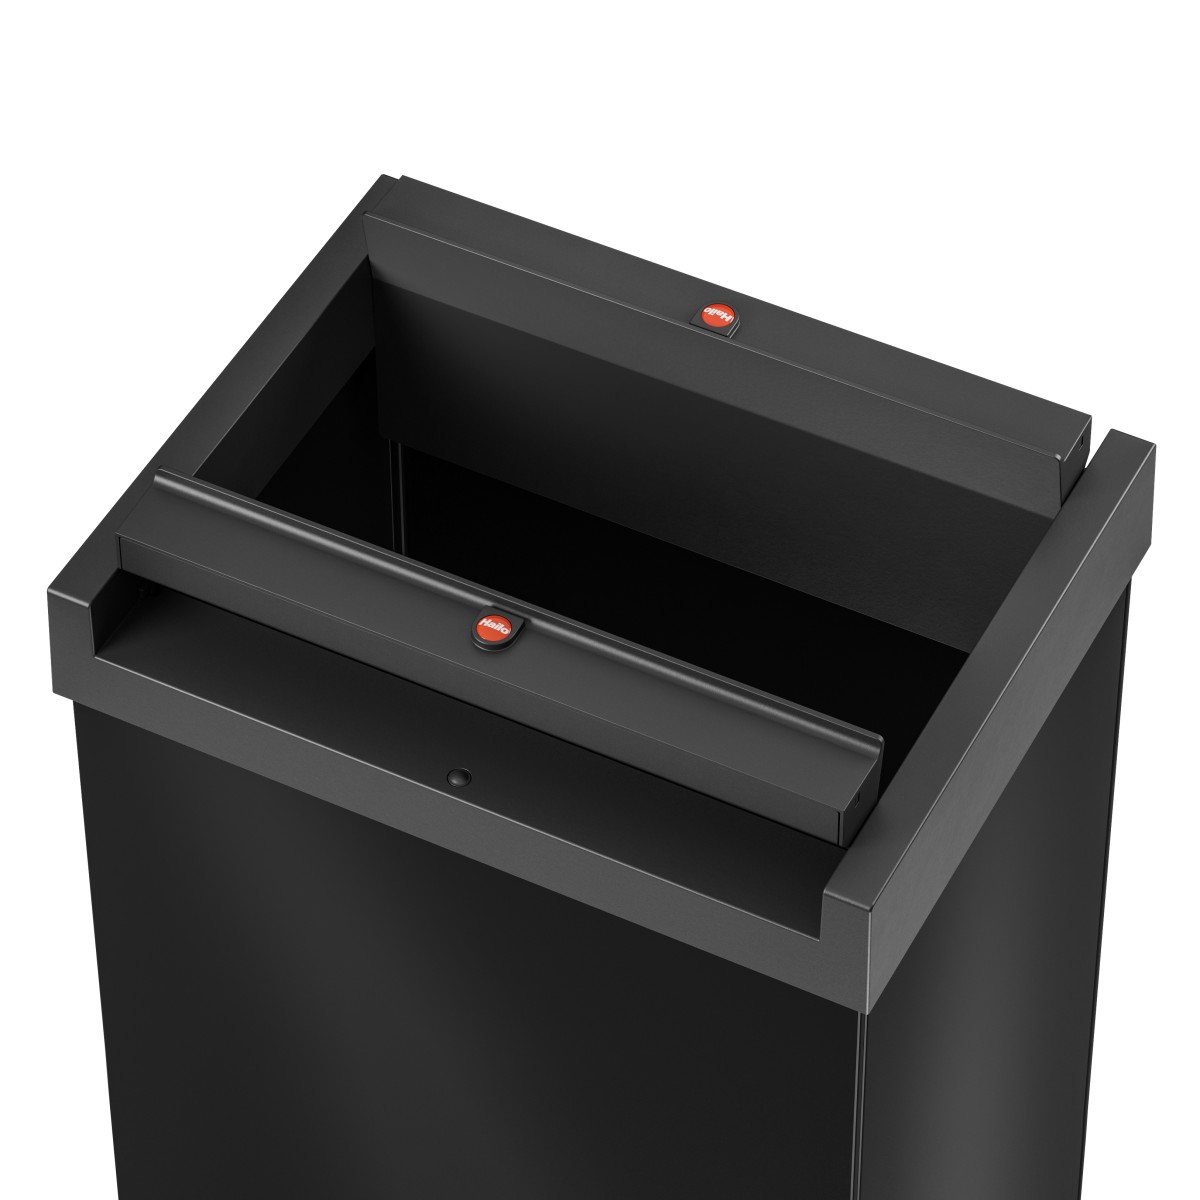 פח אשפה מלבני 52 ליטר למטבחים ומשרדים Big-Box Swing XL HAILO - צבע שחור